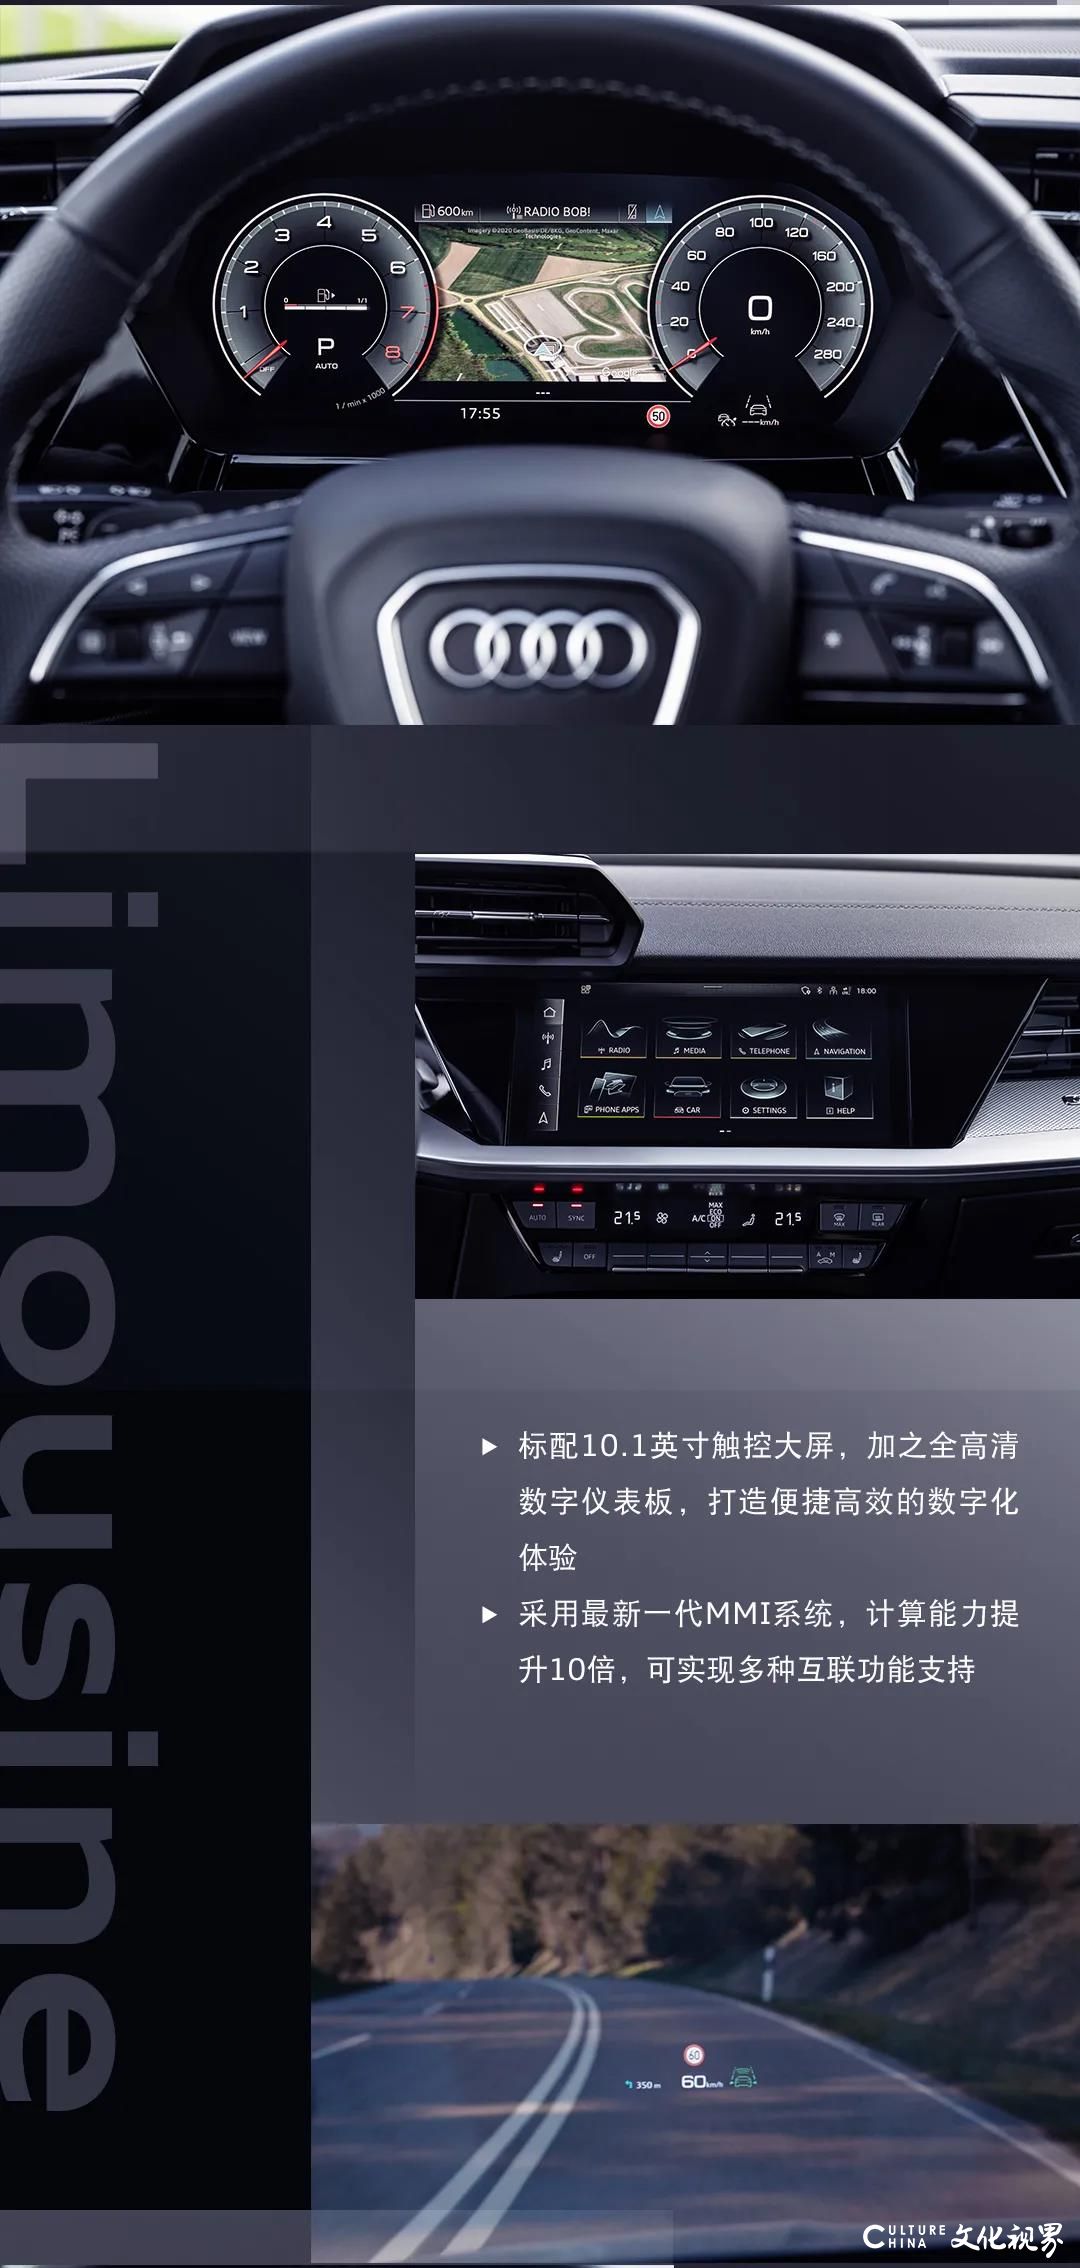 全新设计  硬核动能 智能驾驶 尖端科技——全新奥迪A3 Limousine全球首发